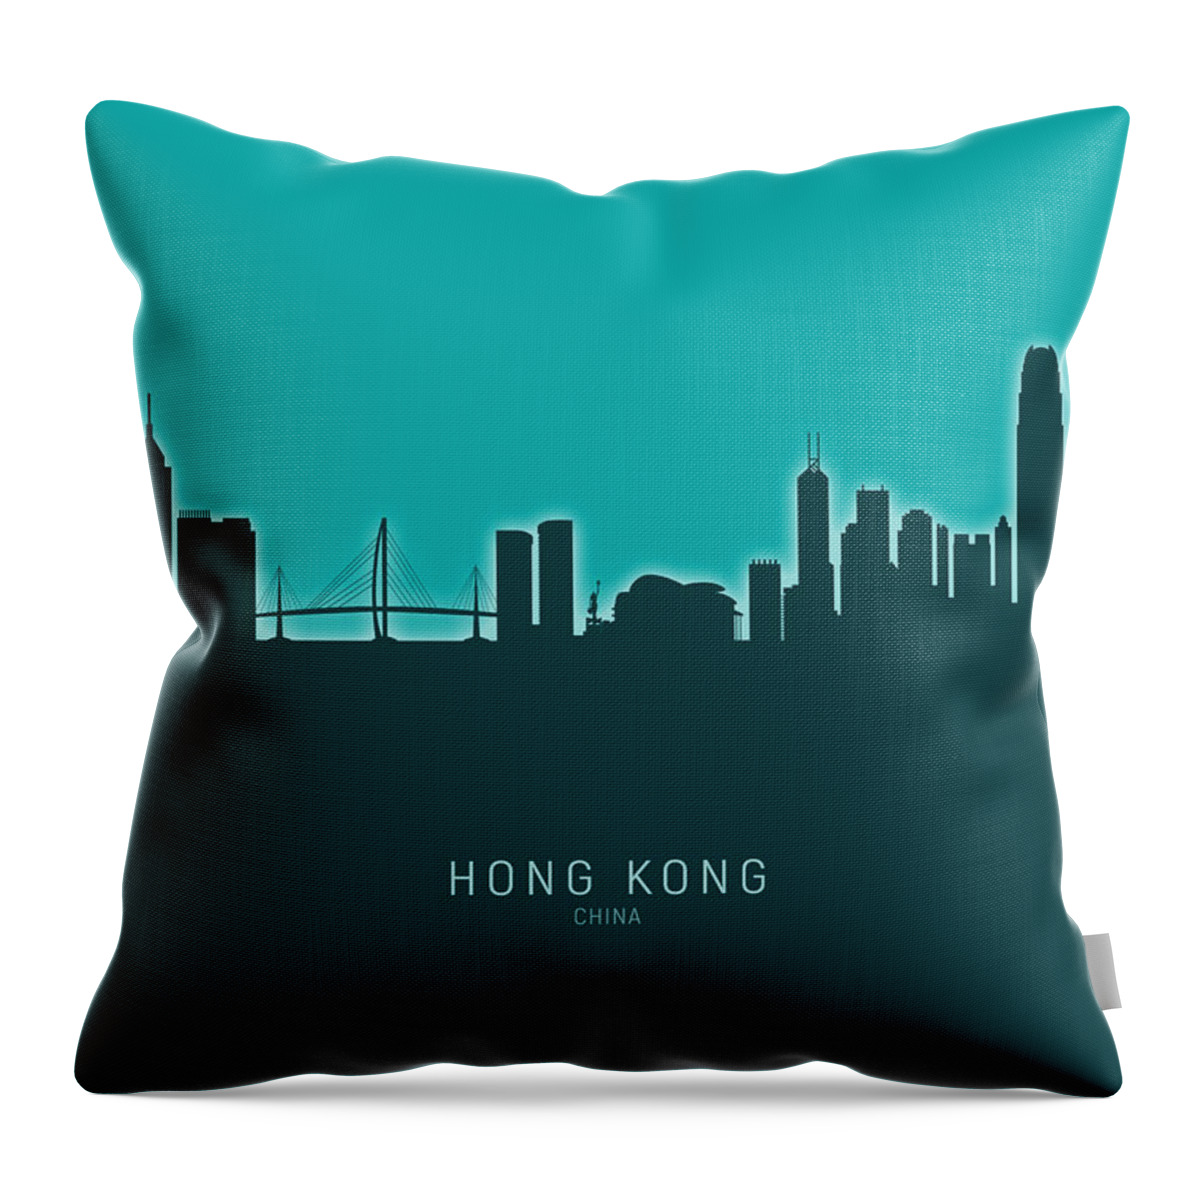 Hong Kong Throw Pillow featuring the digital art Hong Kong Skyline #30 by Michael Tompsett